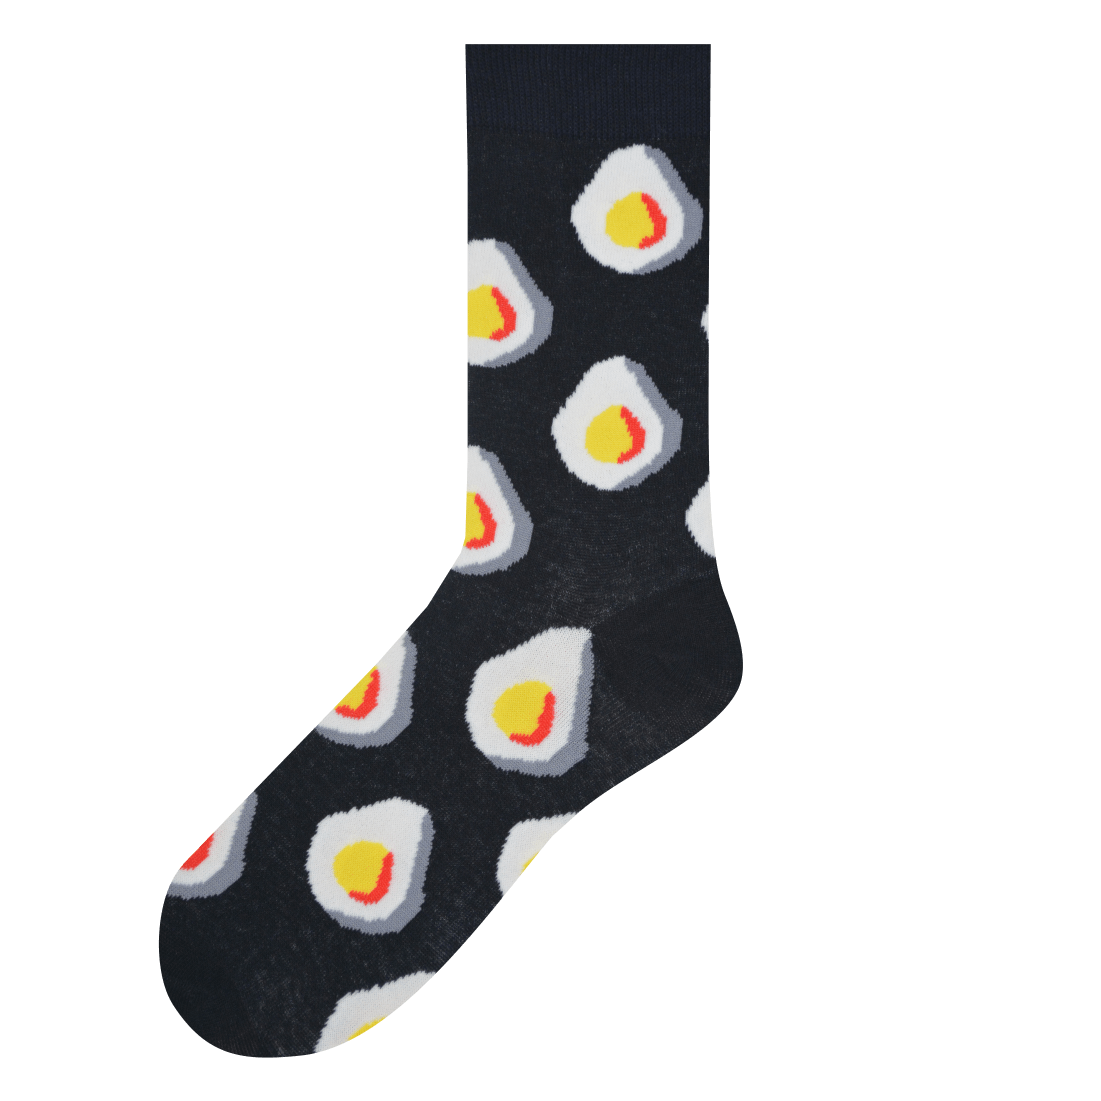 Medias Locas calcetines divertidos de diseño de huevito frito Freaky Socks